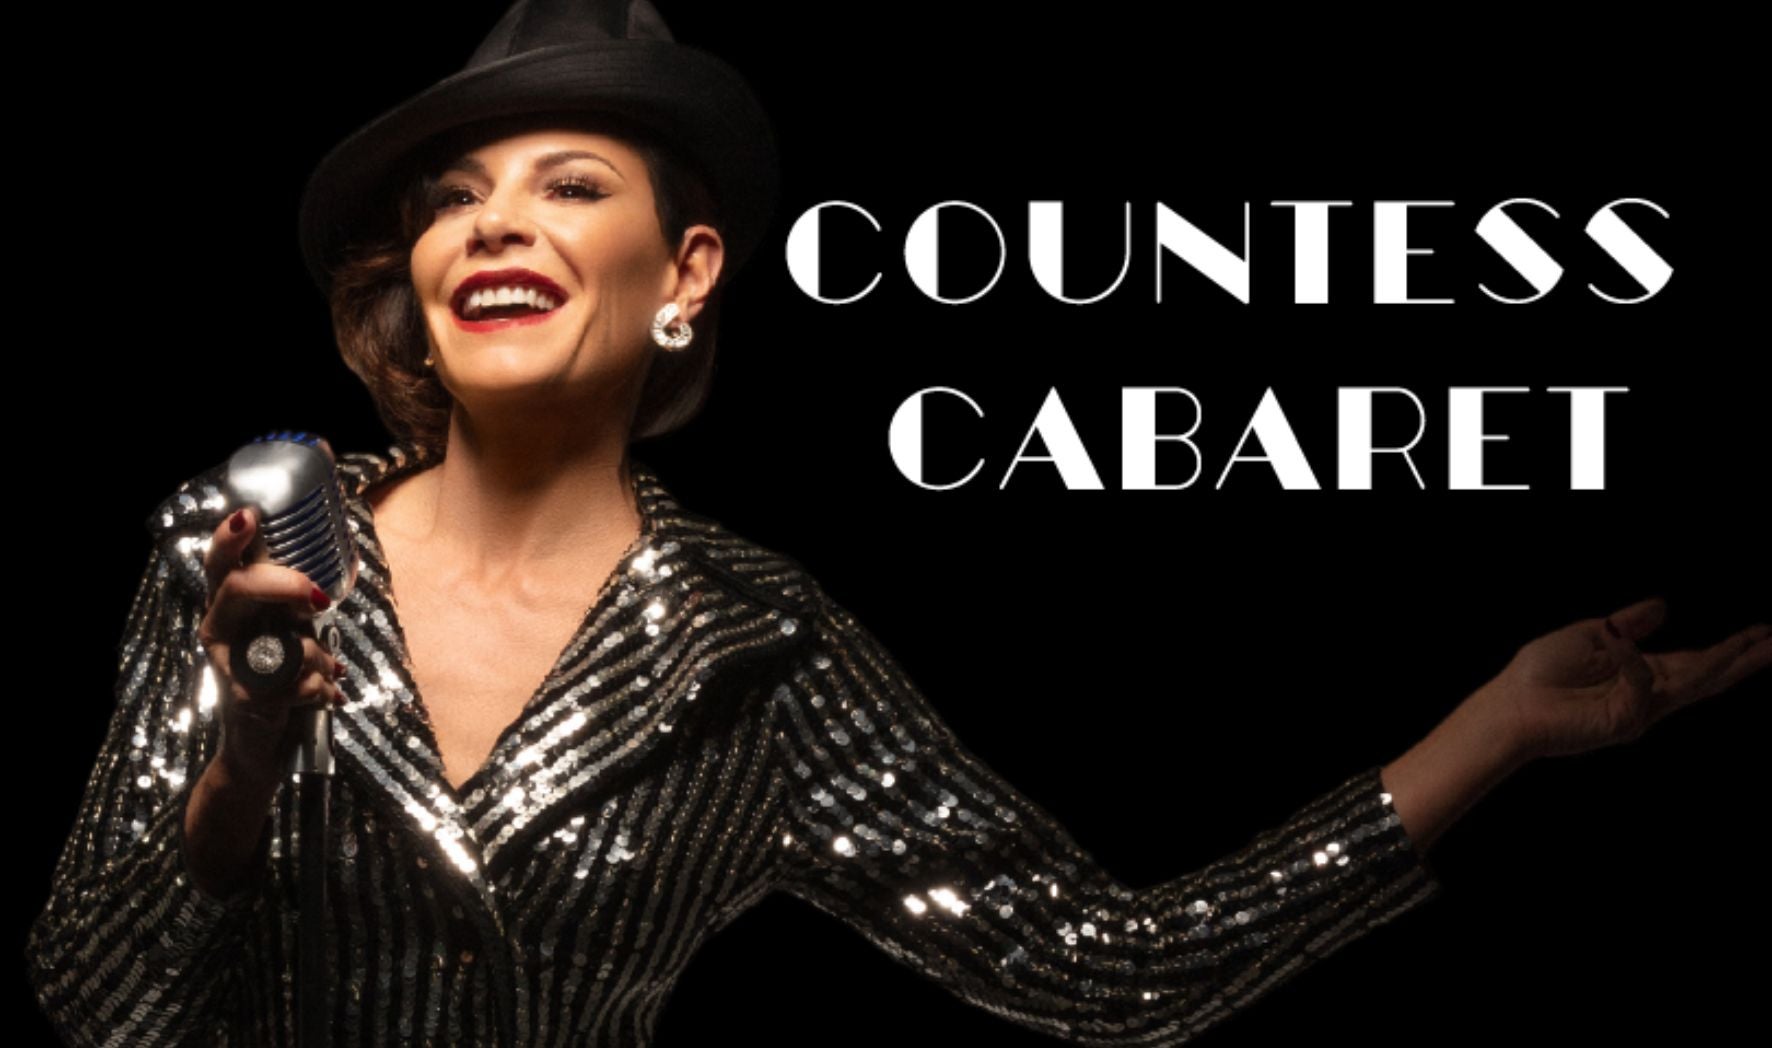 Countess Cabaret: Starring Luann de Lesseps